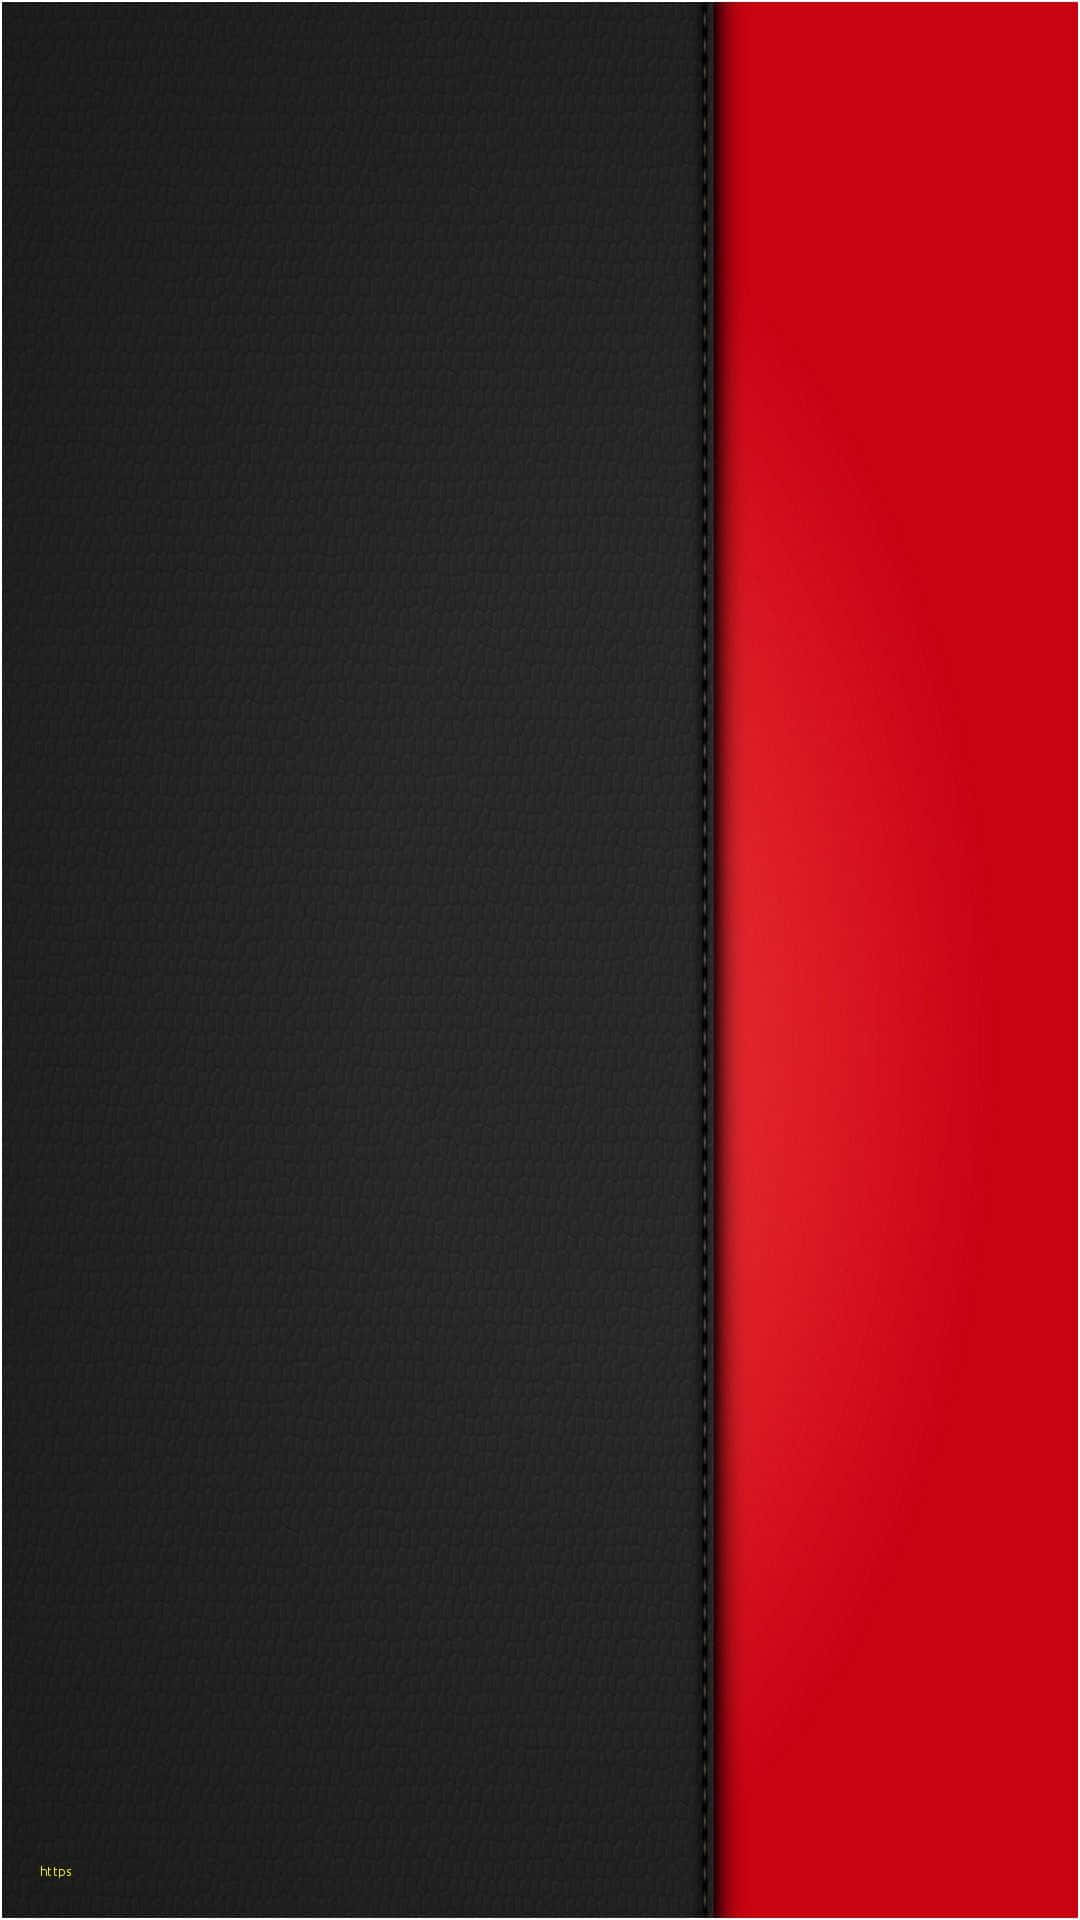 Vis din stil med det nye sort rød iPhone wallpaper. Wallpaper